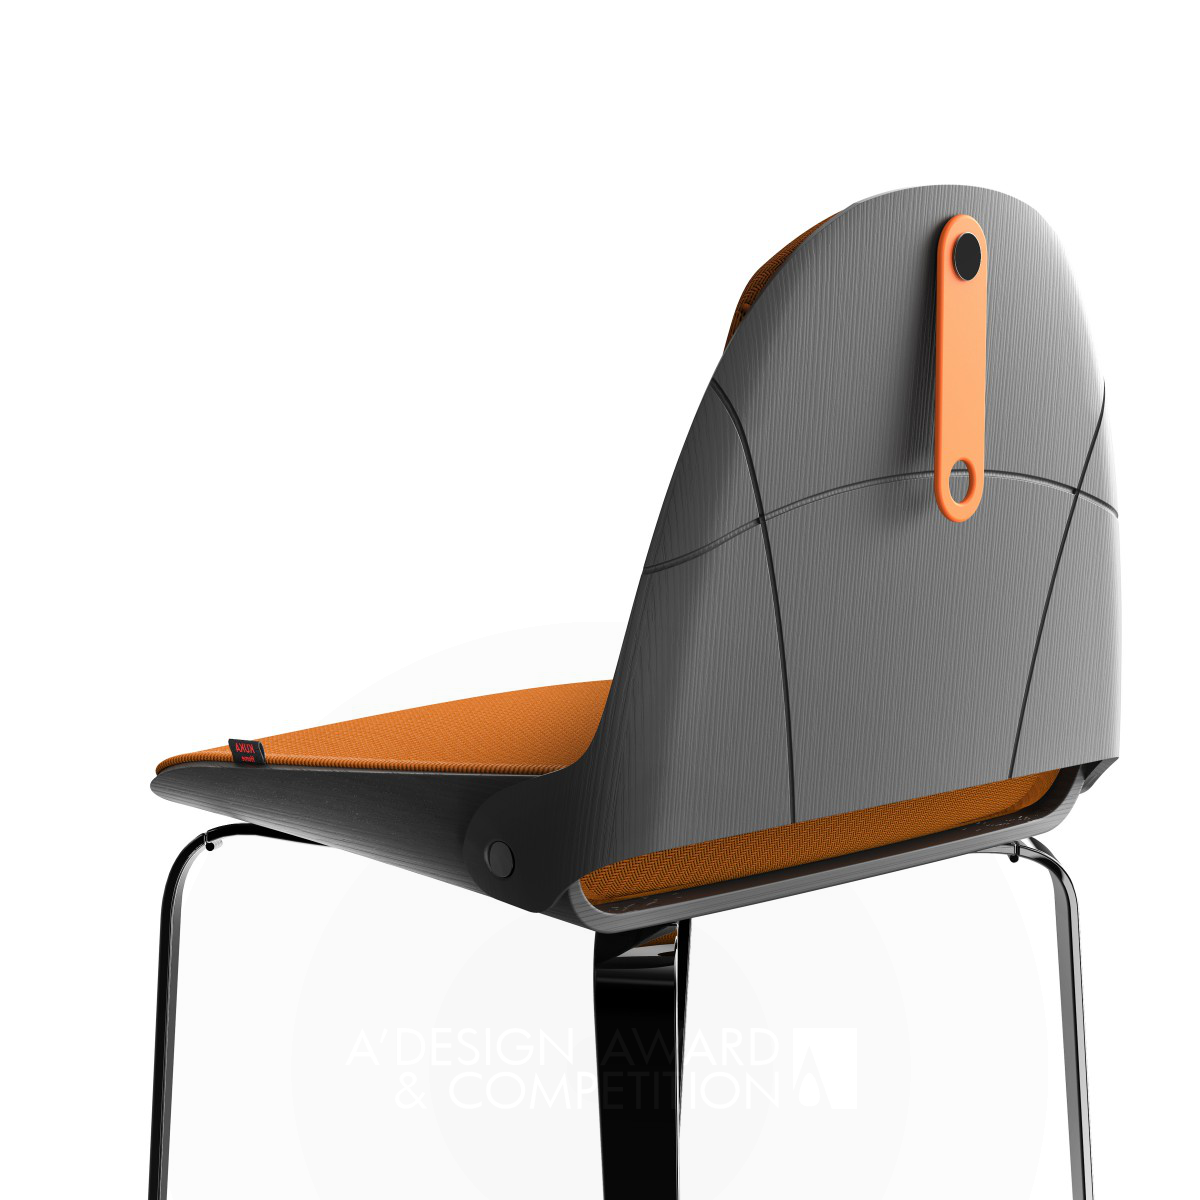 Lu: Ein innovativer und stilvoller Stuhl für den modernen Lifestyle